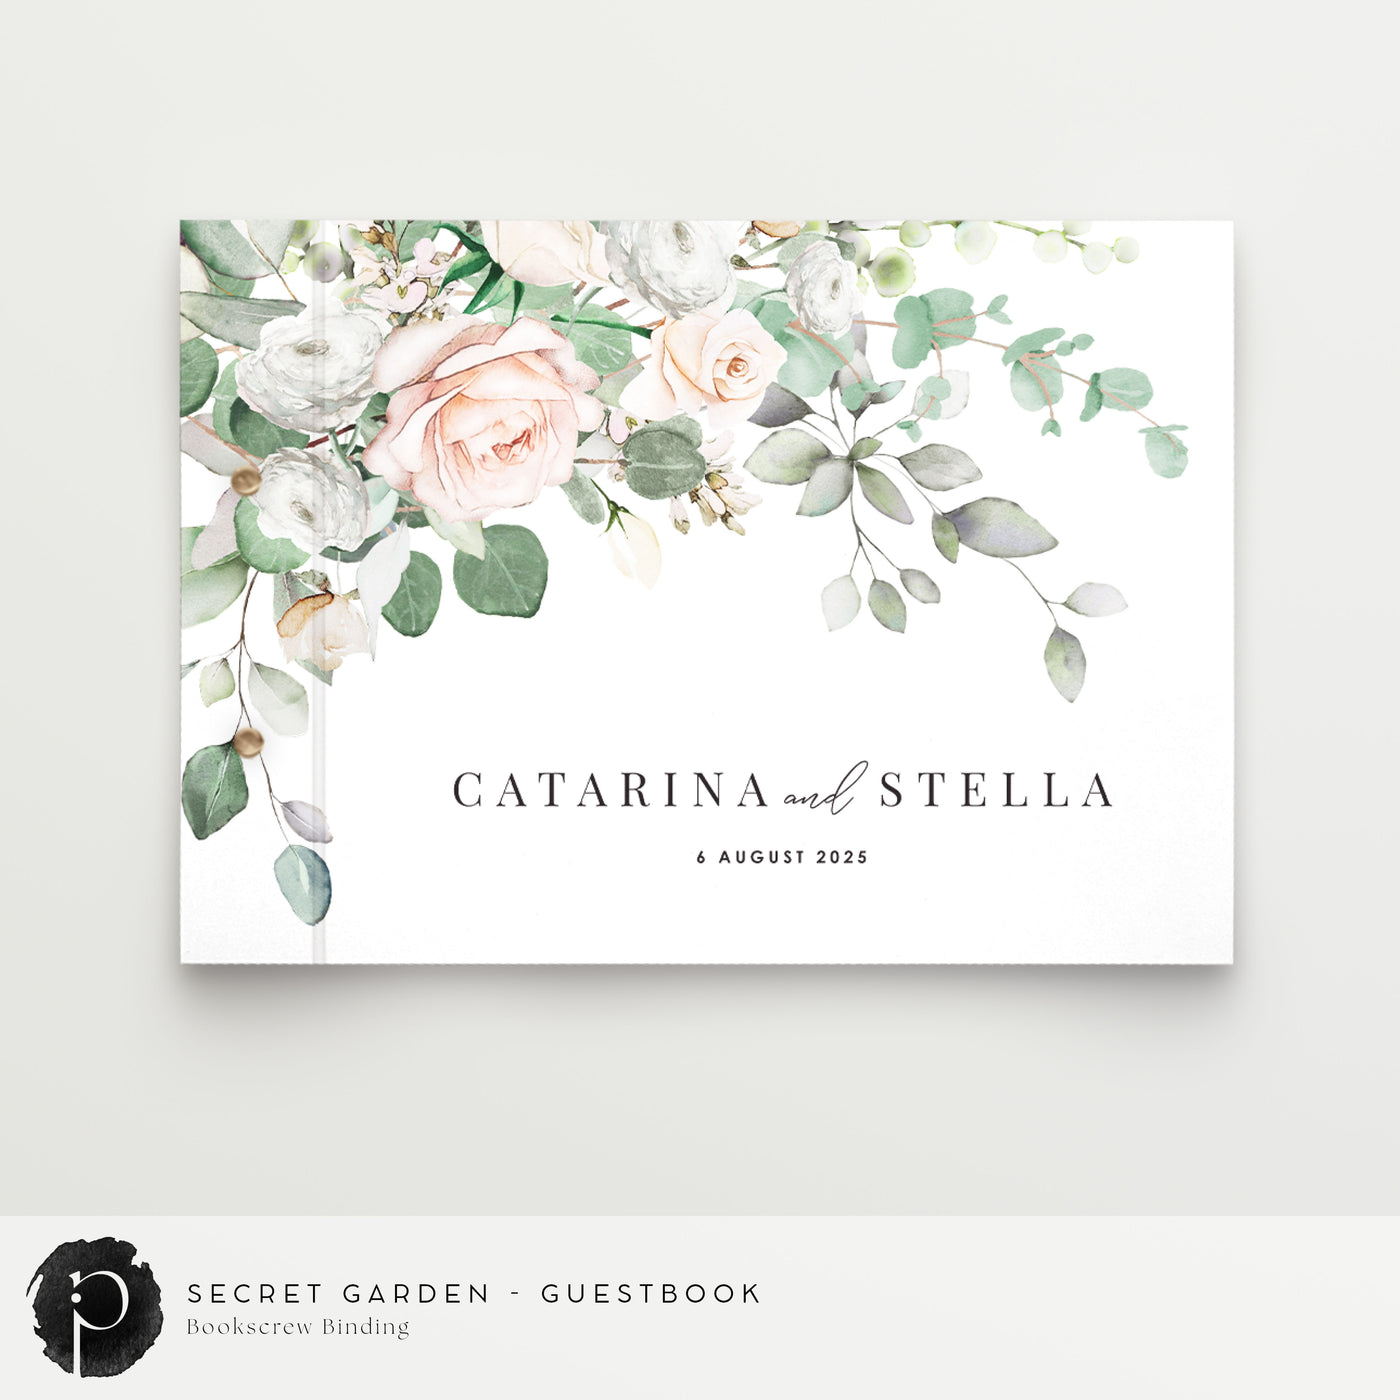 Secret Garden - Guestbook